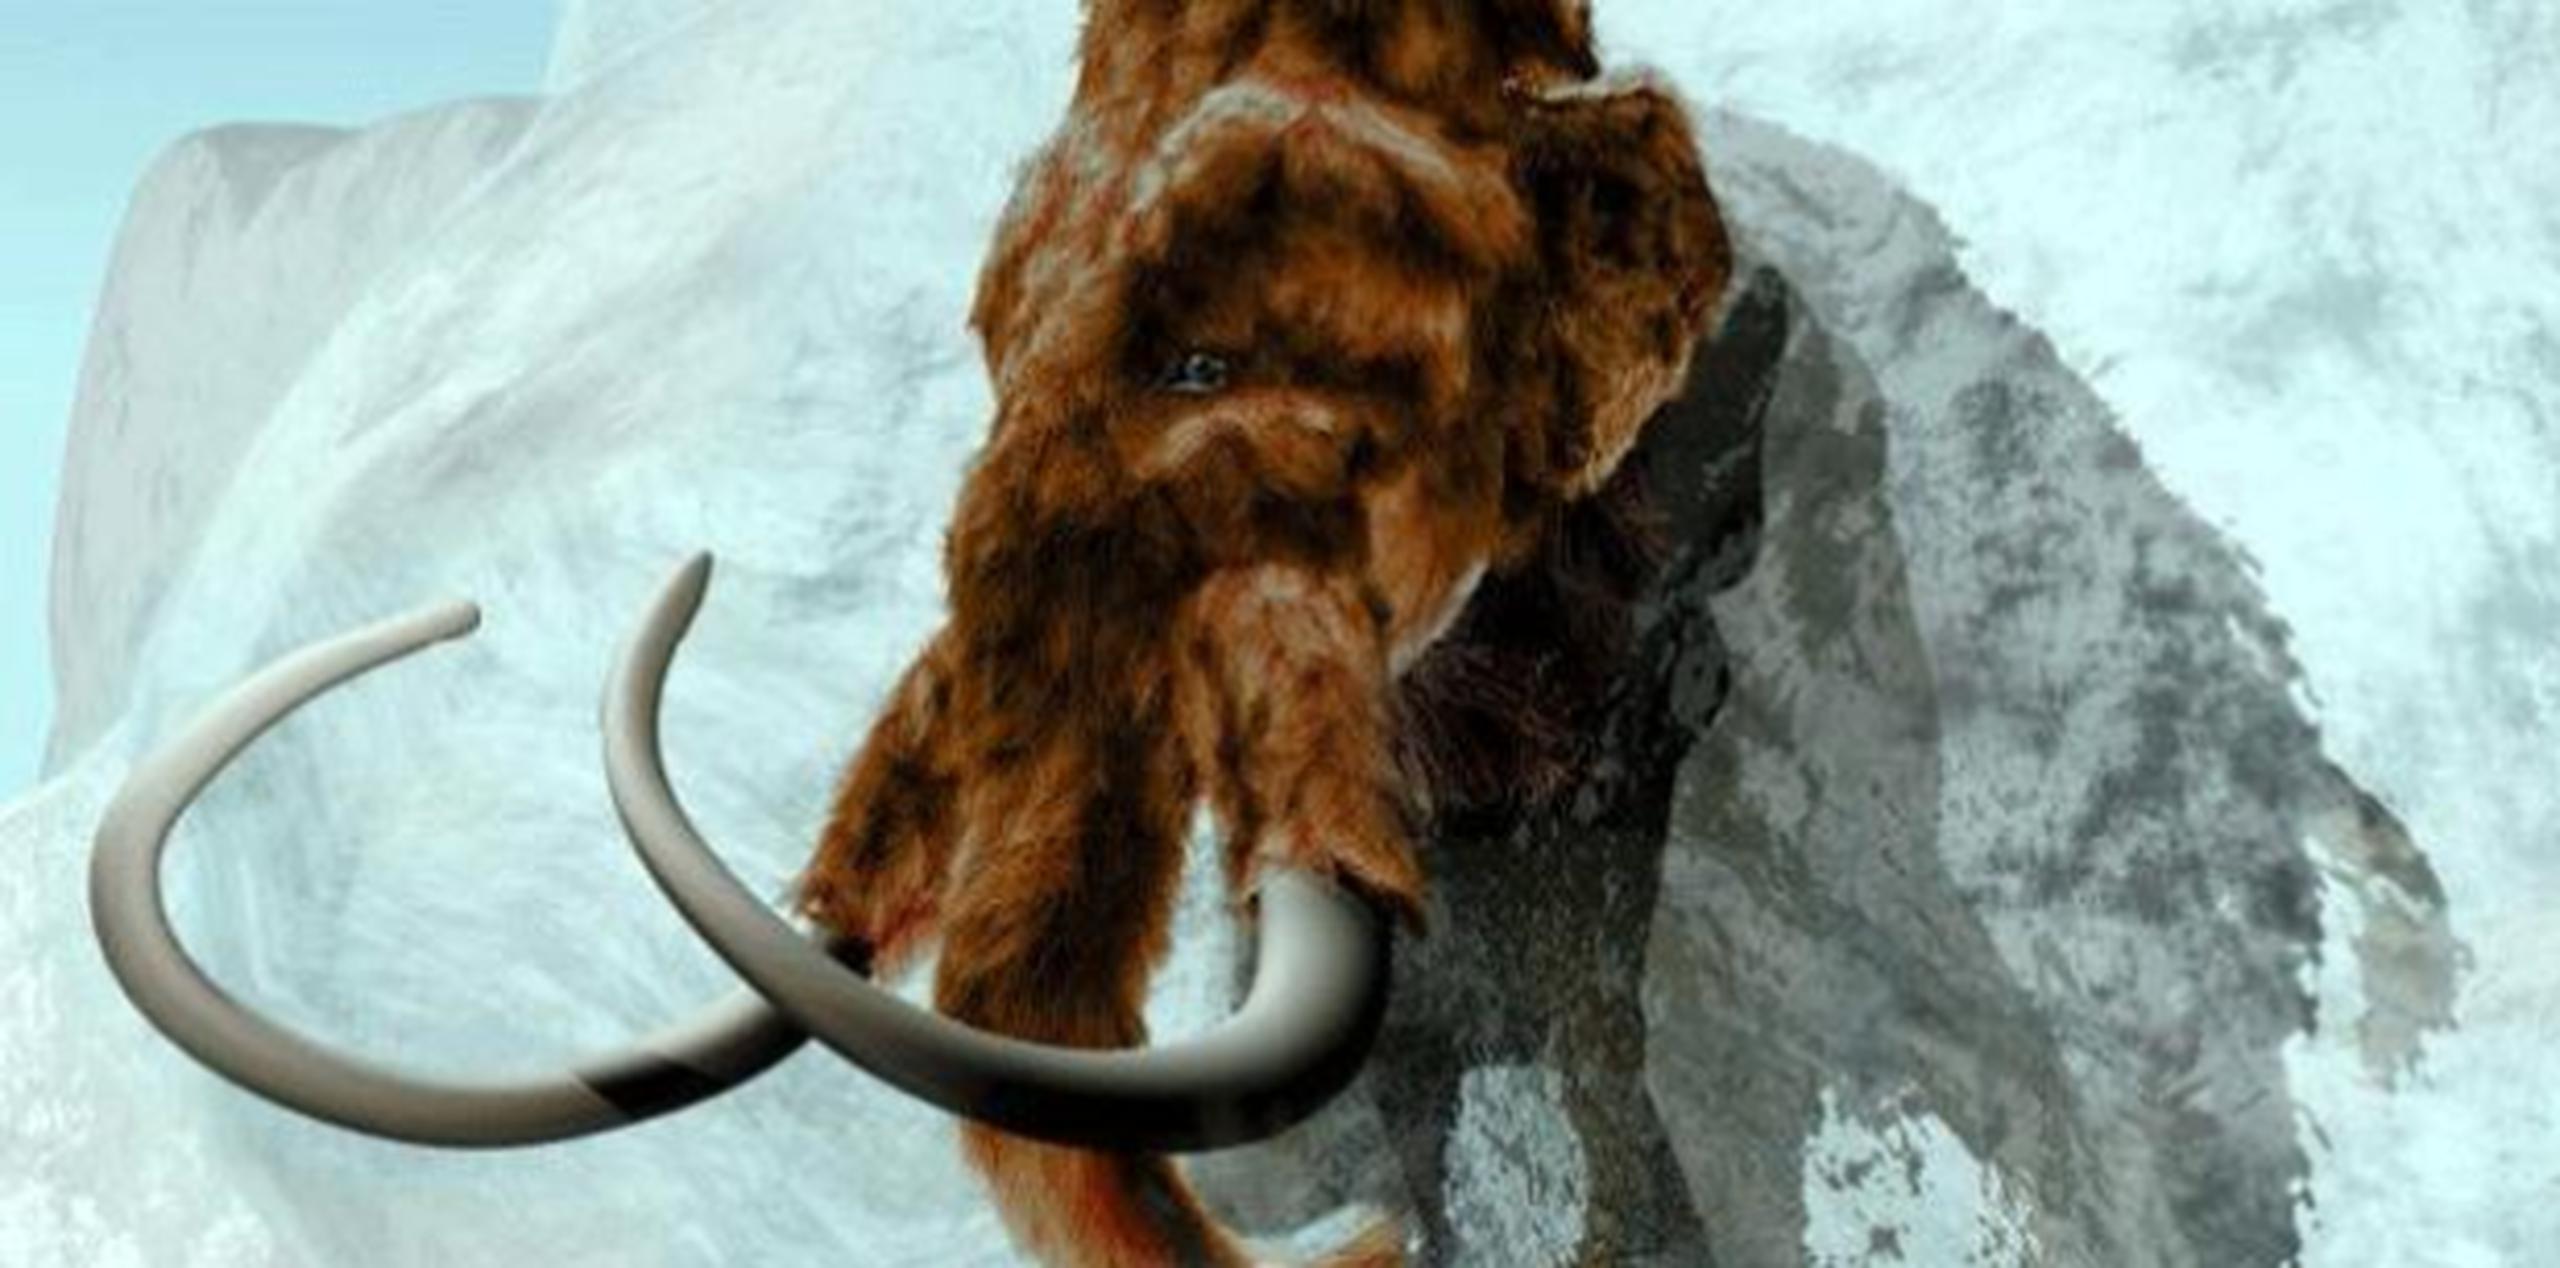 Los mamuts nunca tuvieron contacto con humanos en la isla de St. Paul de Alaska. (Archivo)